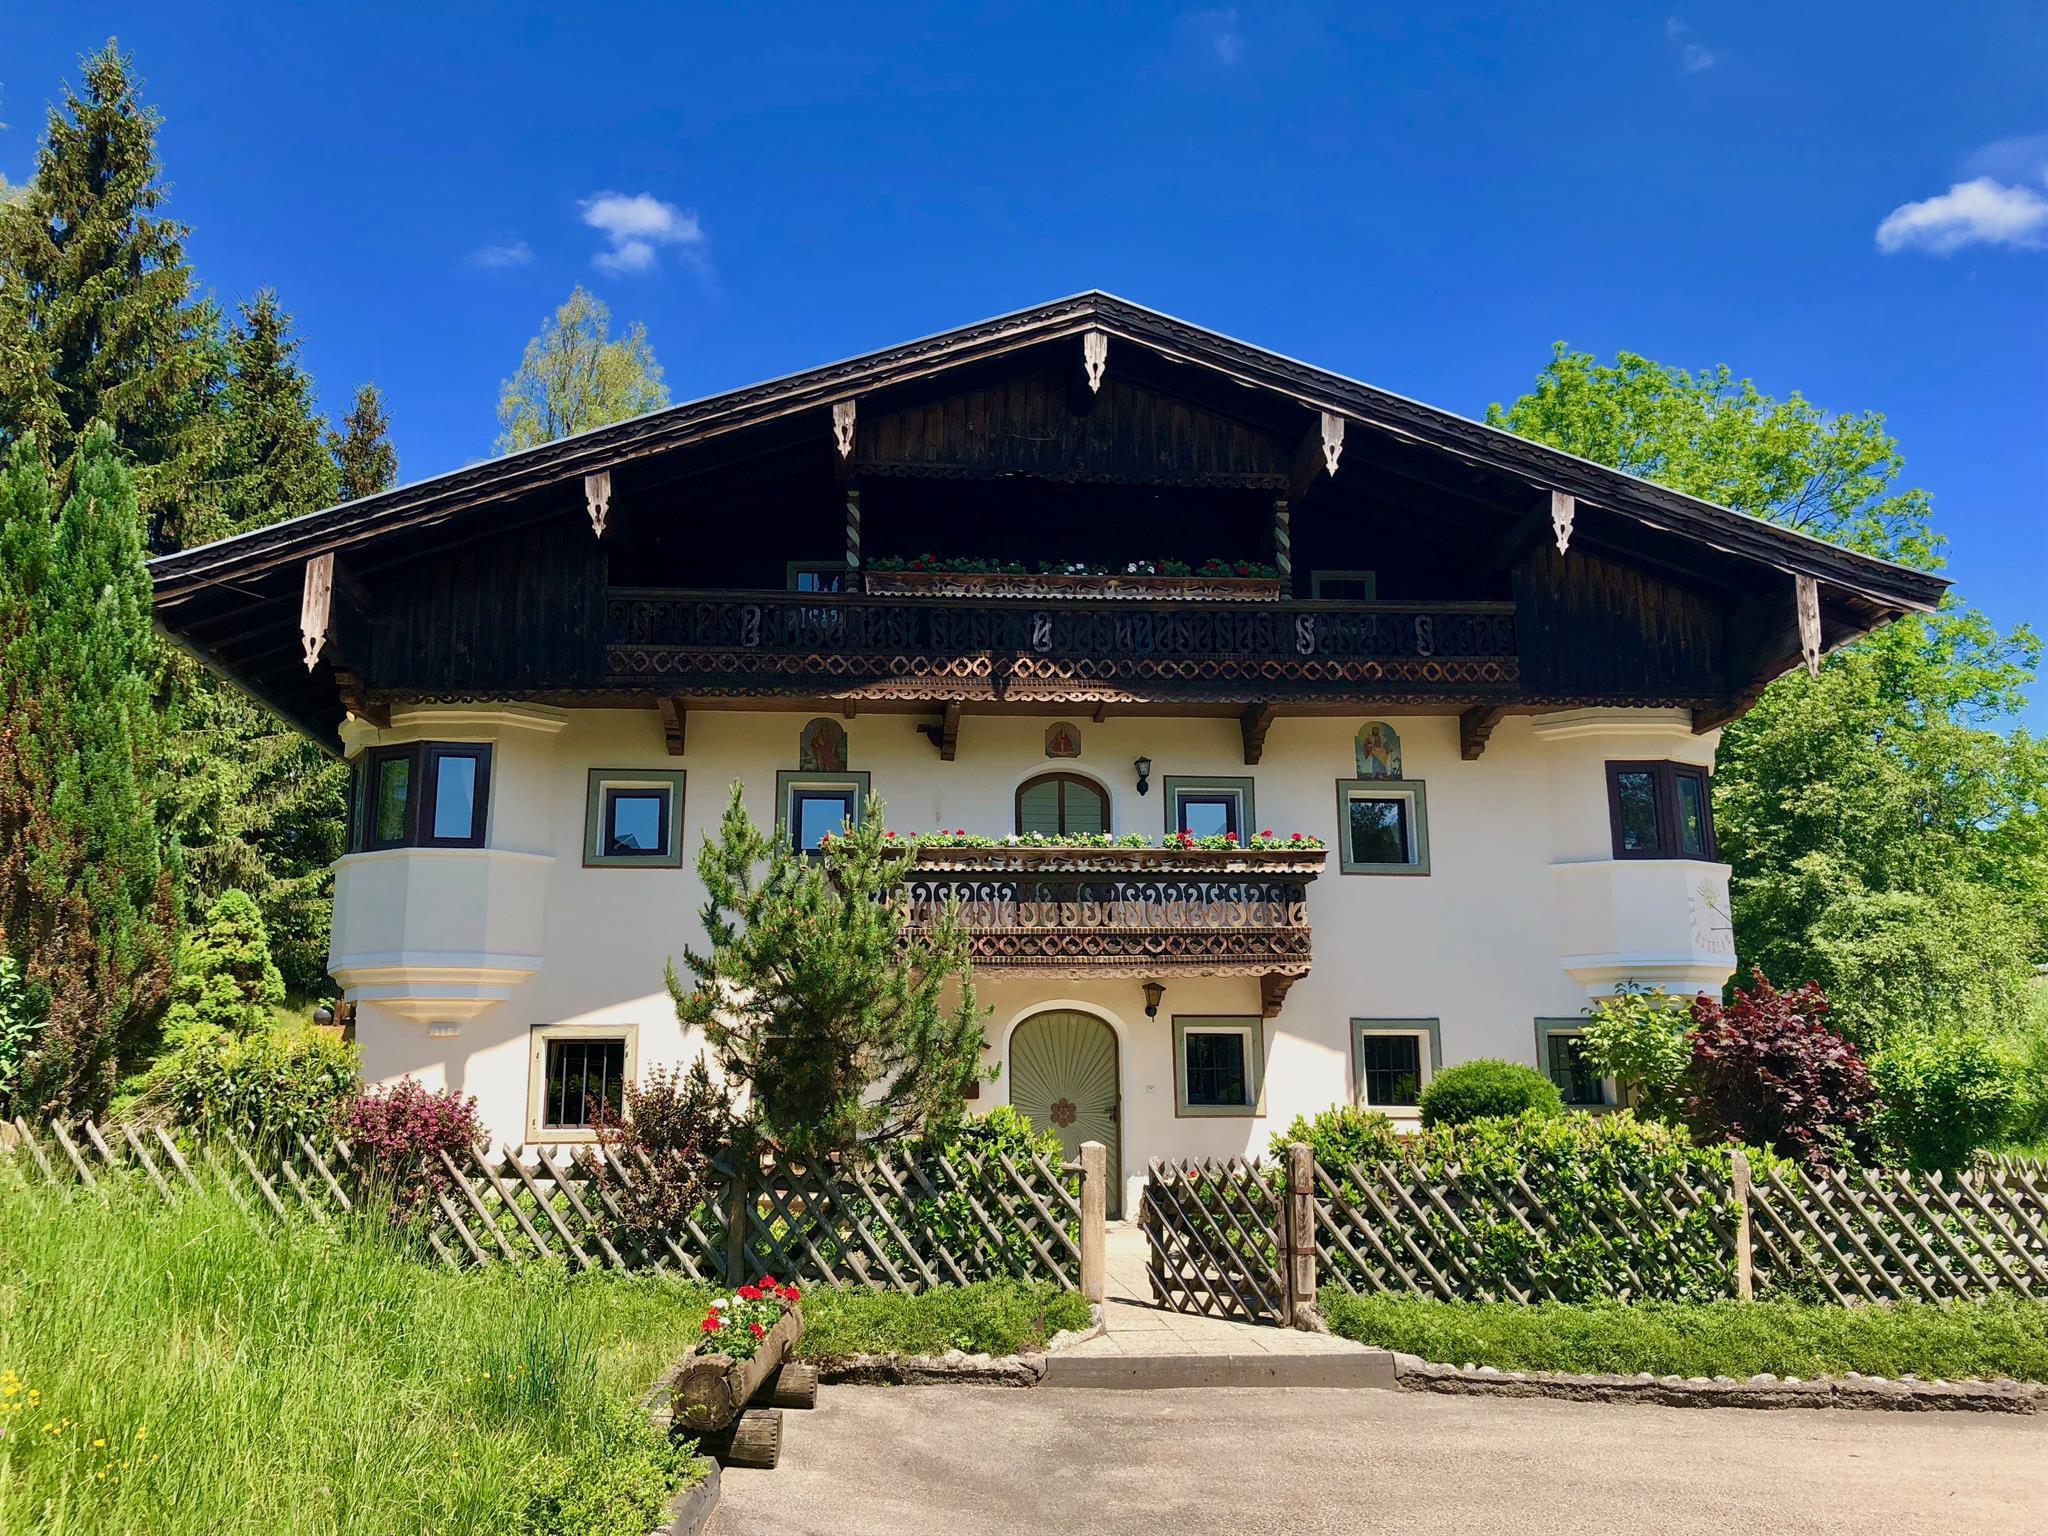 Bauernhaus-Schloss Wagrain Ferienhaus, Toilette un Ferienhaus in der Urlaubsregion Kufstein